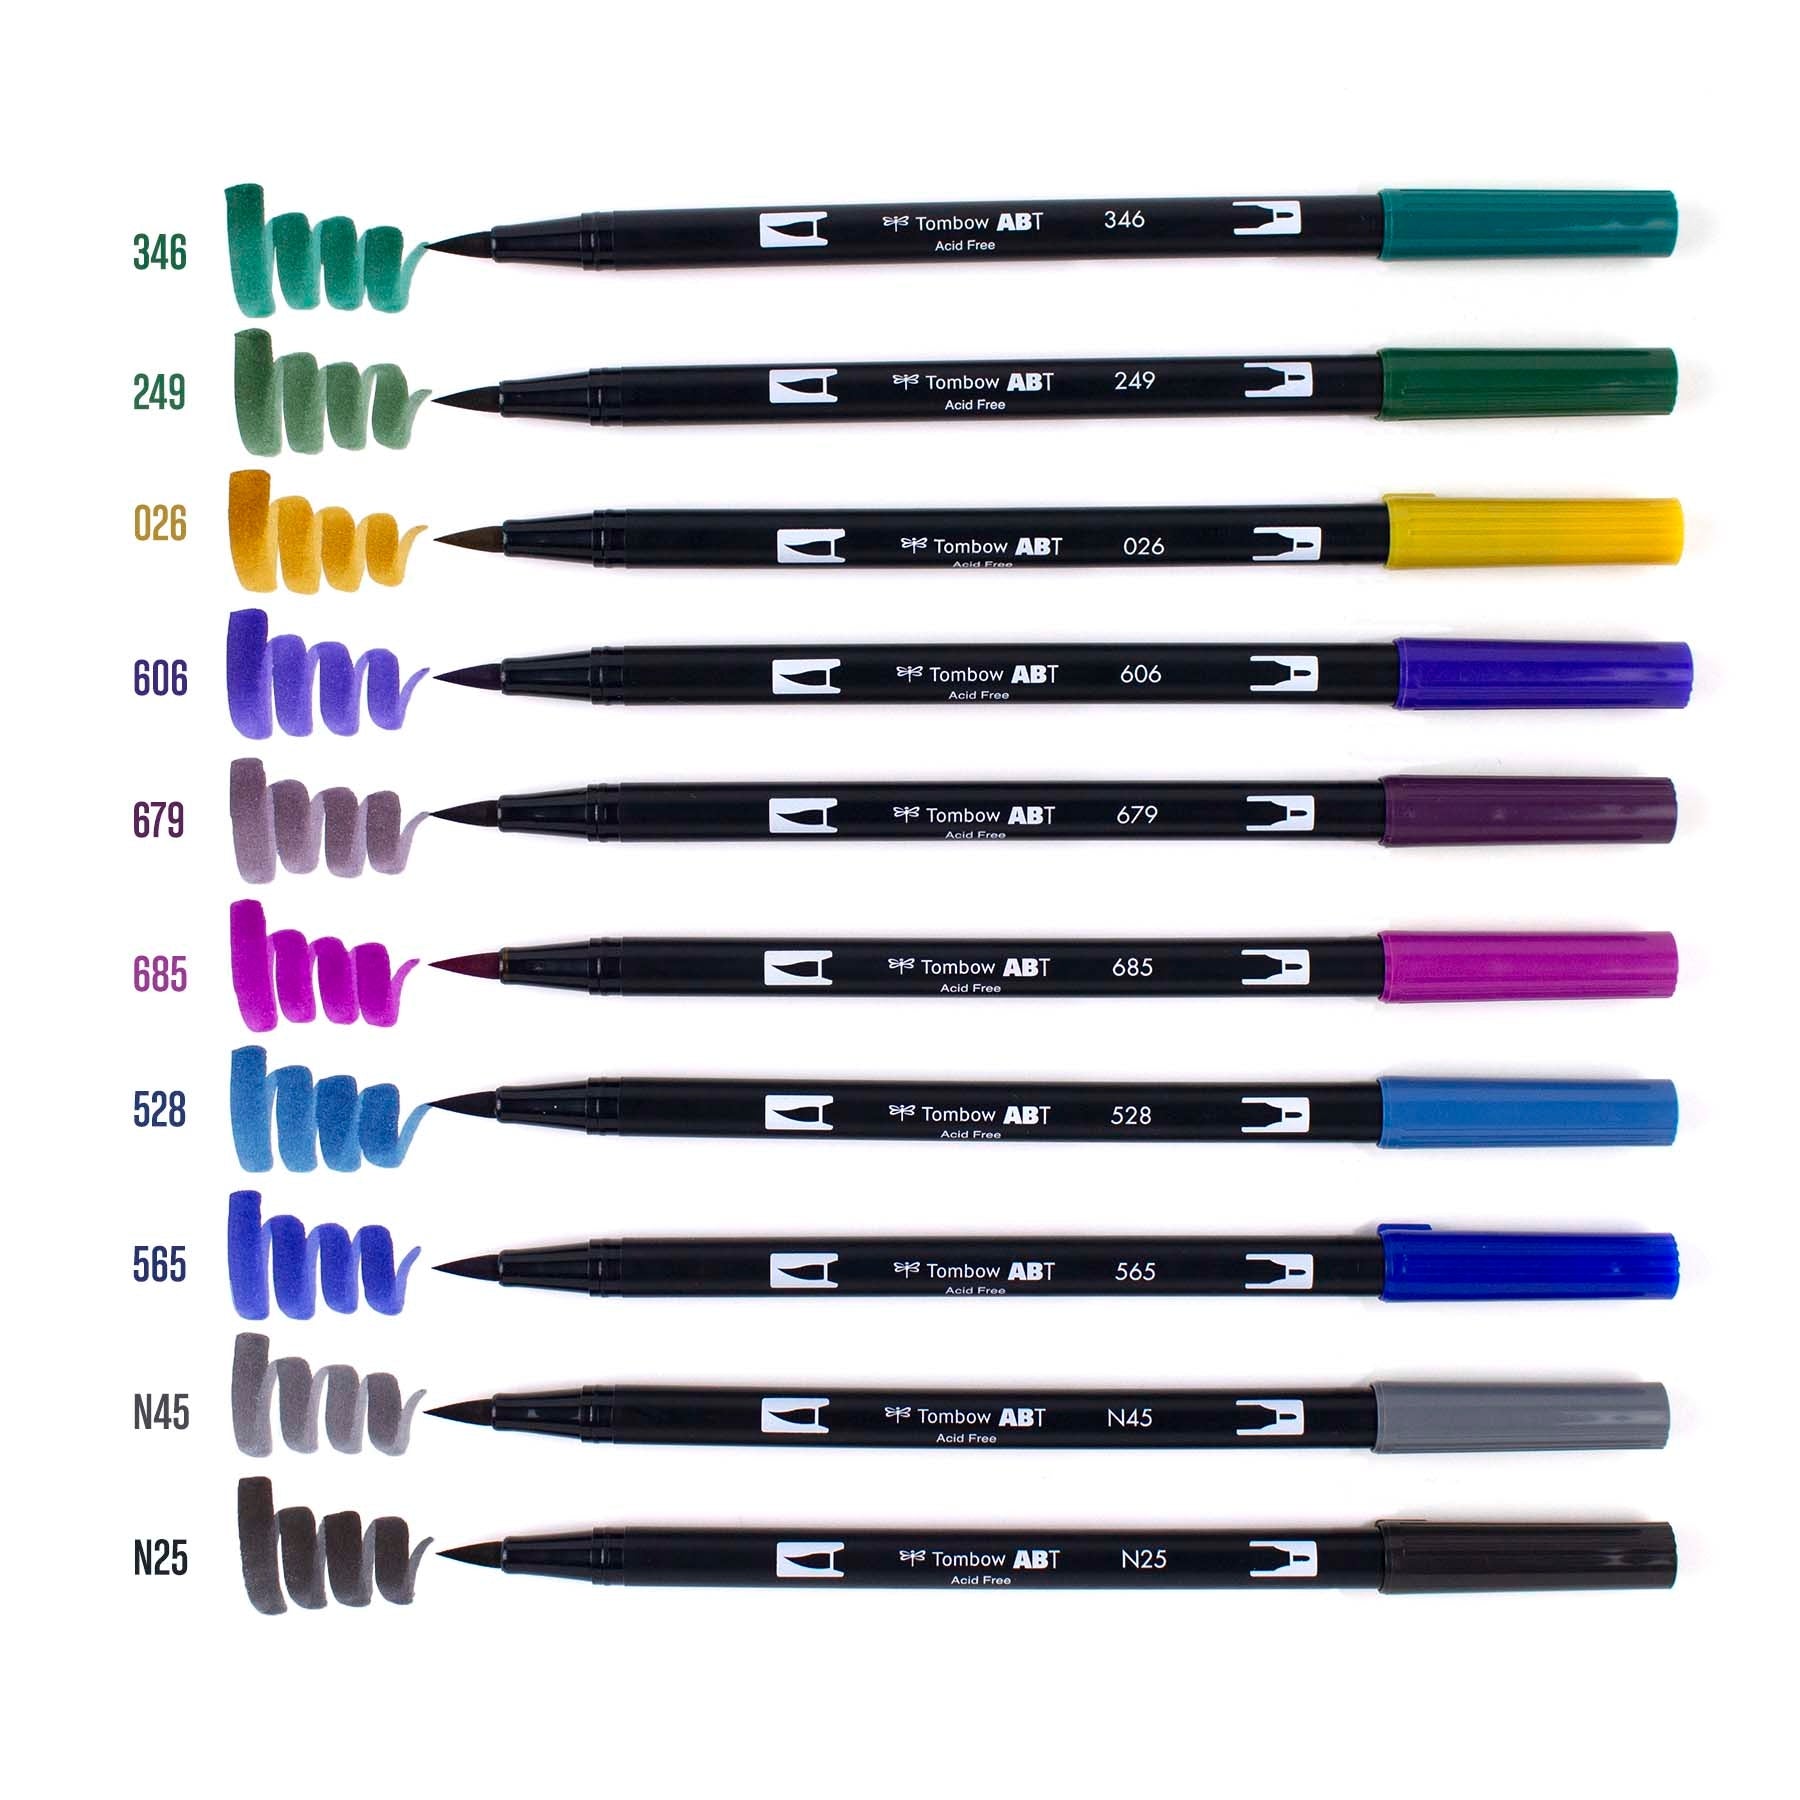 Doms Brush Pen Set – Stationery Plug